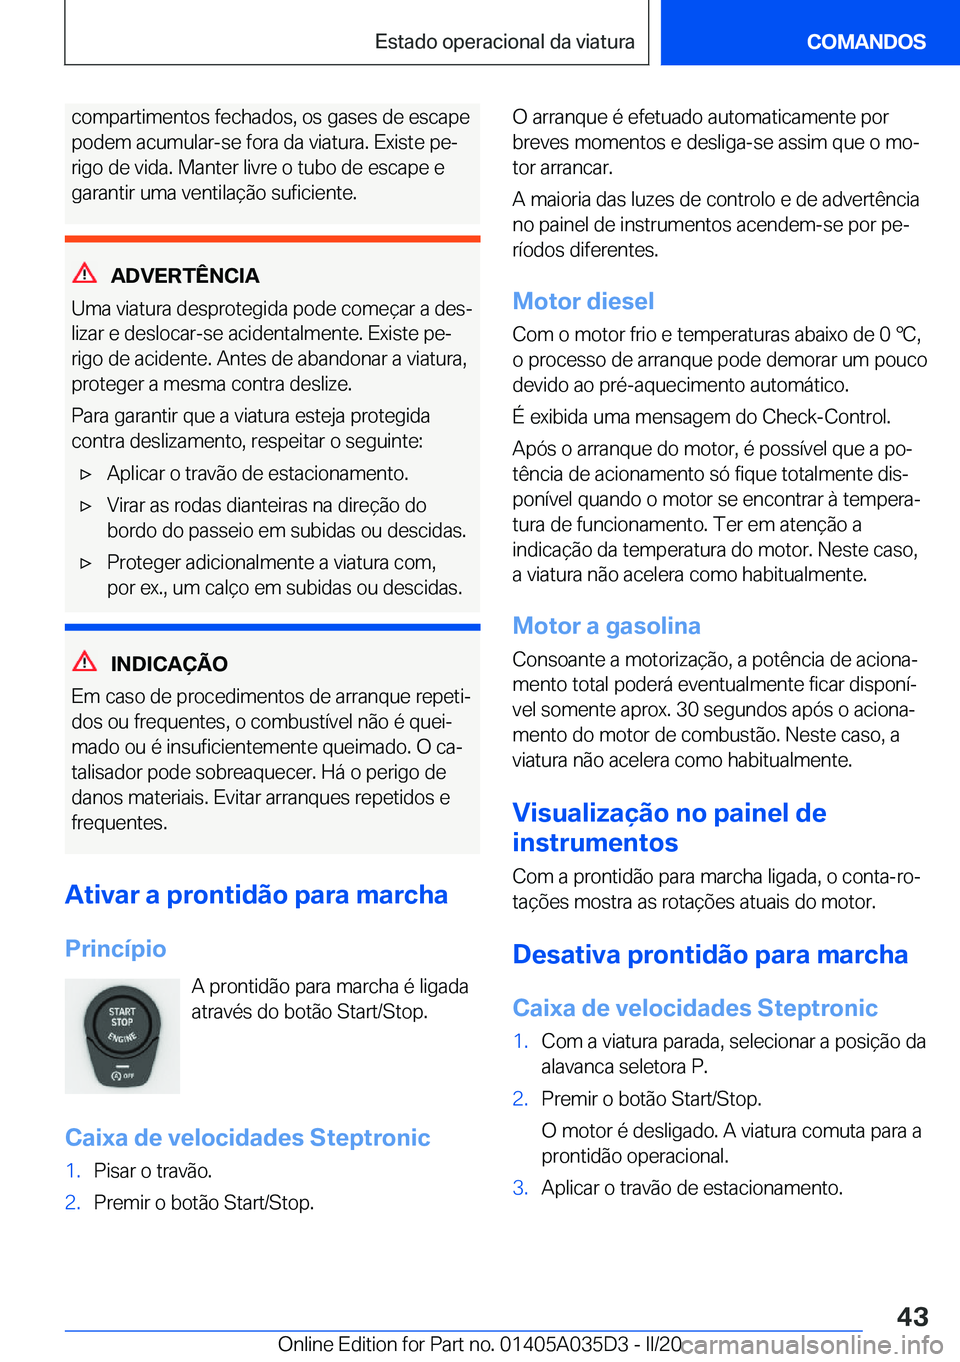 BMW X4 2020  Manual do condutor (in Portuguese) �c�o�m�p�a�r�t�i�m�e�n�t�o�s��f�e�c�h�a�d�o�s�,��o�s��g�a�s�e�s��d�e��e�s�c�a�p�e
�p�o�d�e�m��a�c�u�m�u�l�a�r�-�s�e��f�o�r�a��d�a��v�i�a�t�u�r�a�.��E�x�i�s�t�e��p�eª
�r�i�g�o��d�e��v�i�